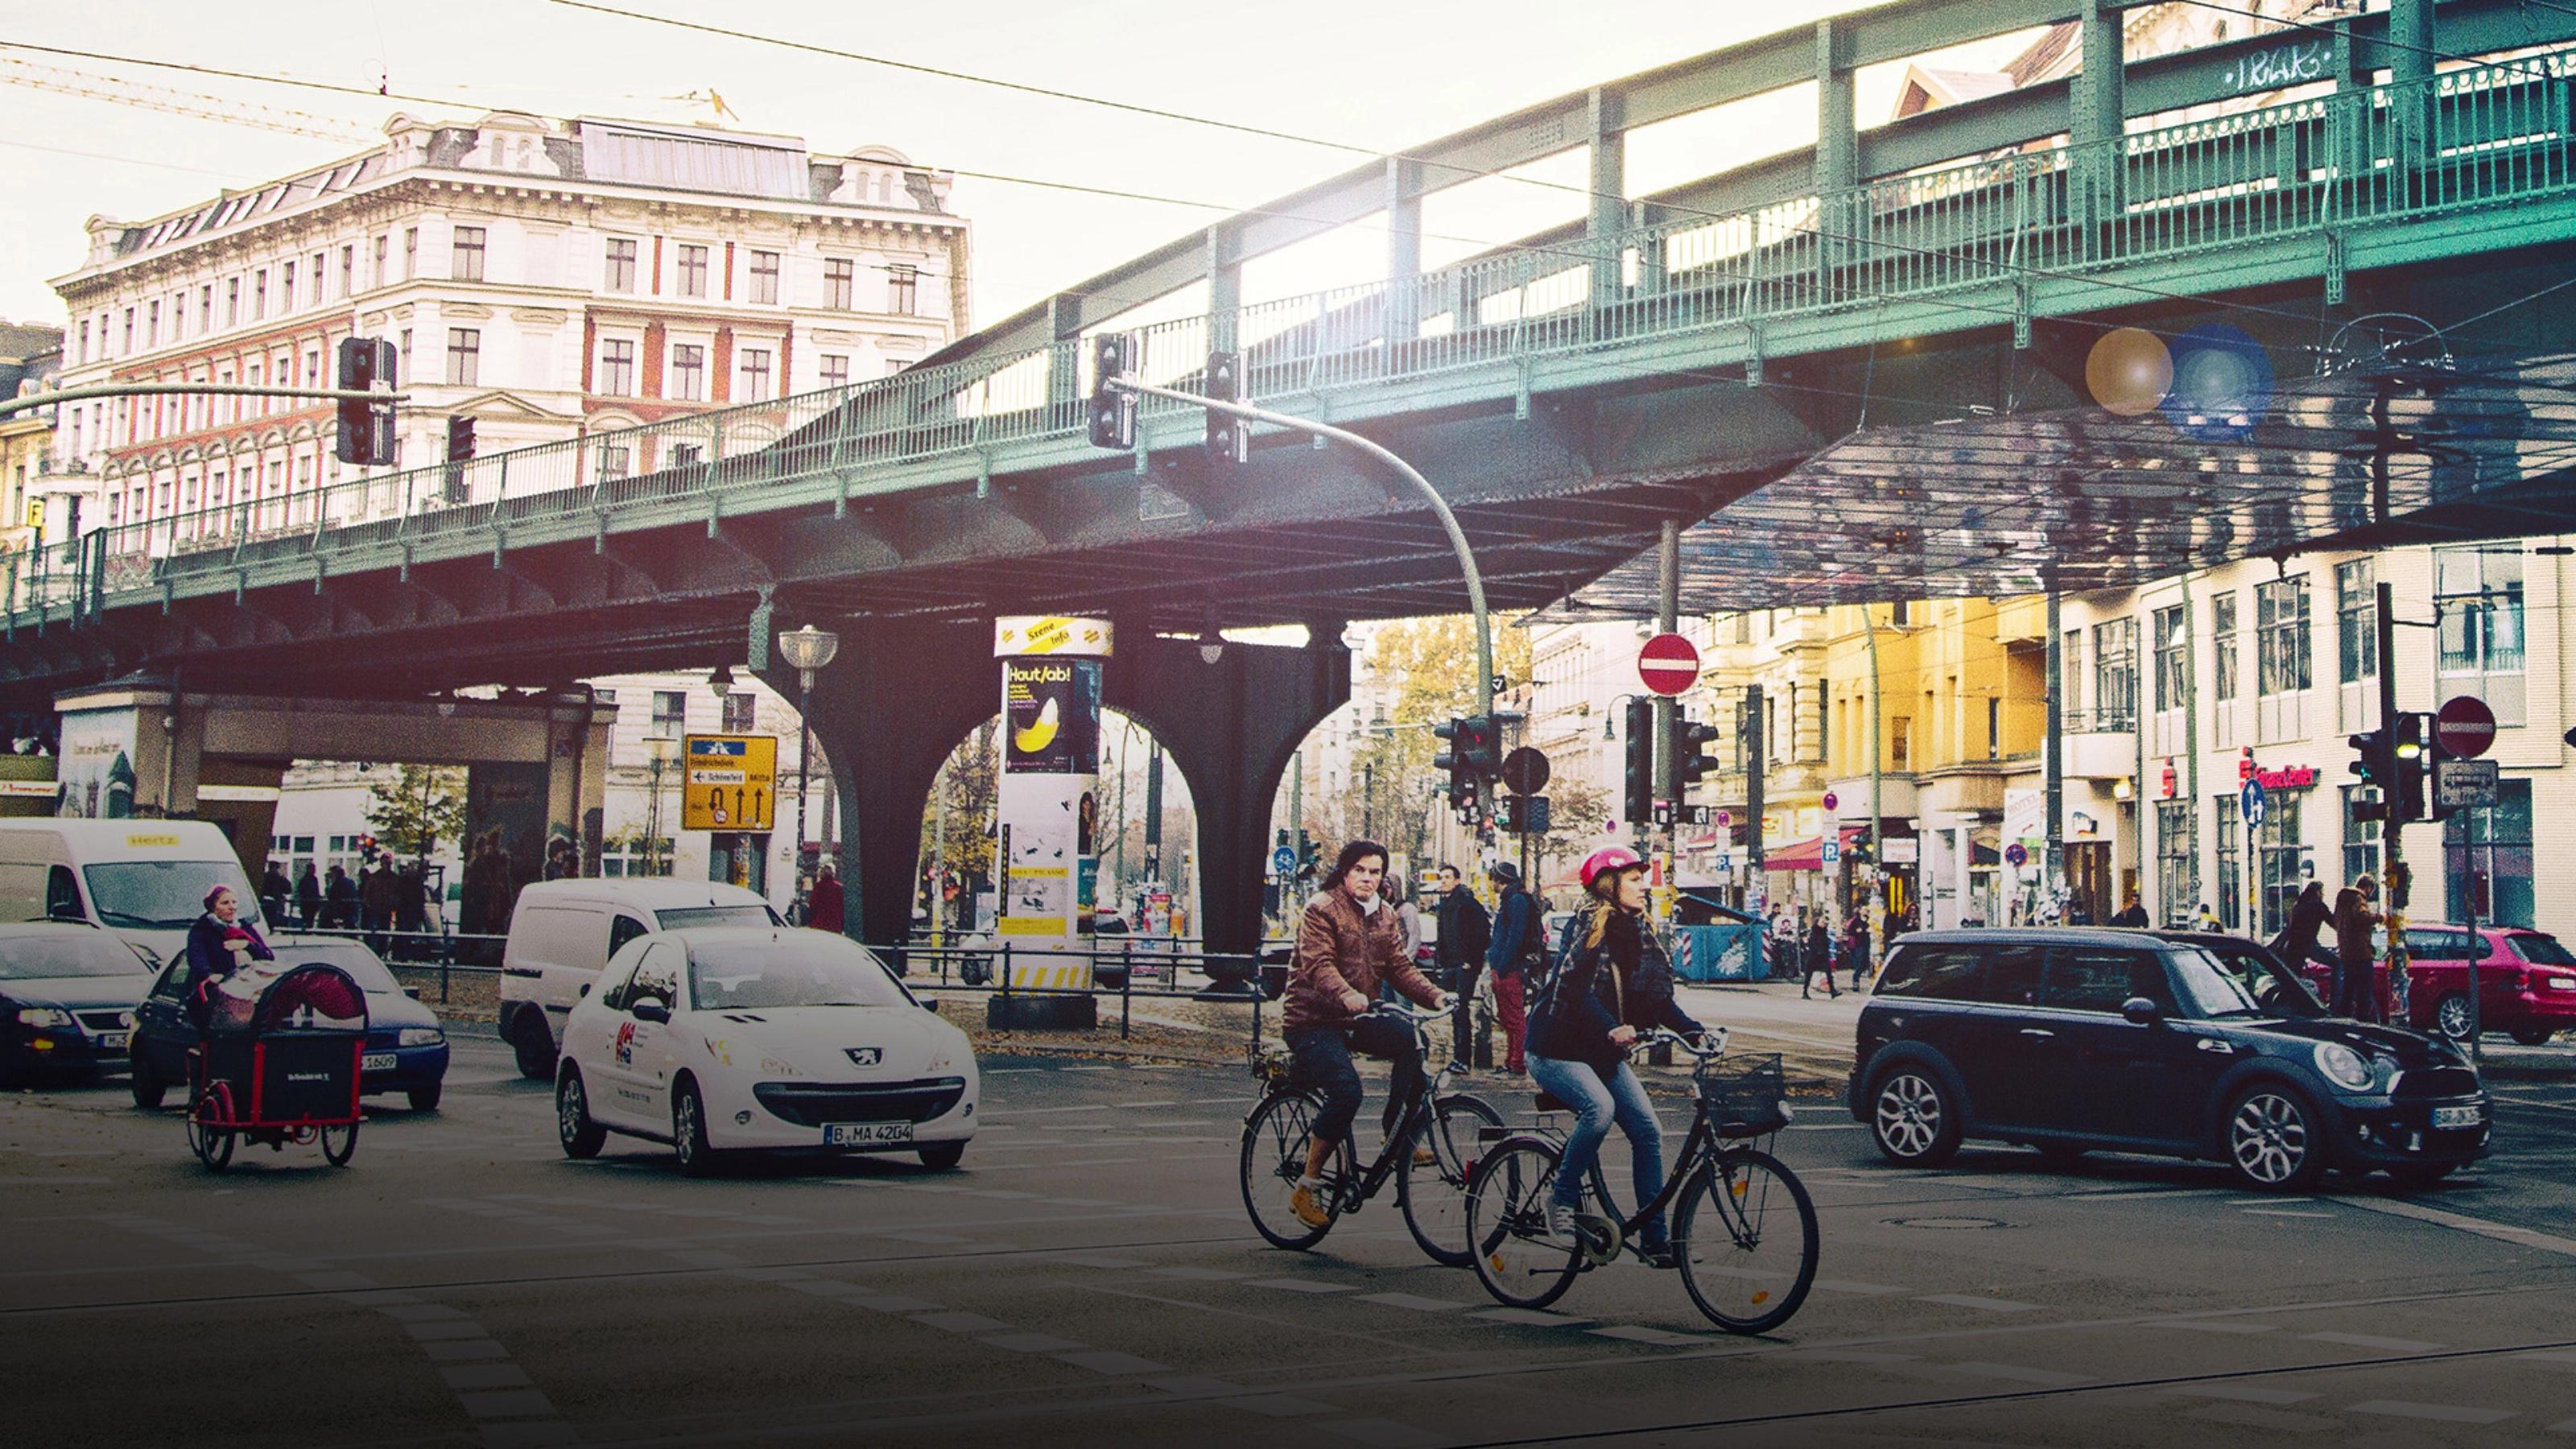 Verkehrskreuzung in Berlin mit Radfahrern und Autos